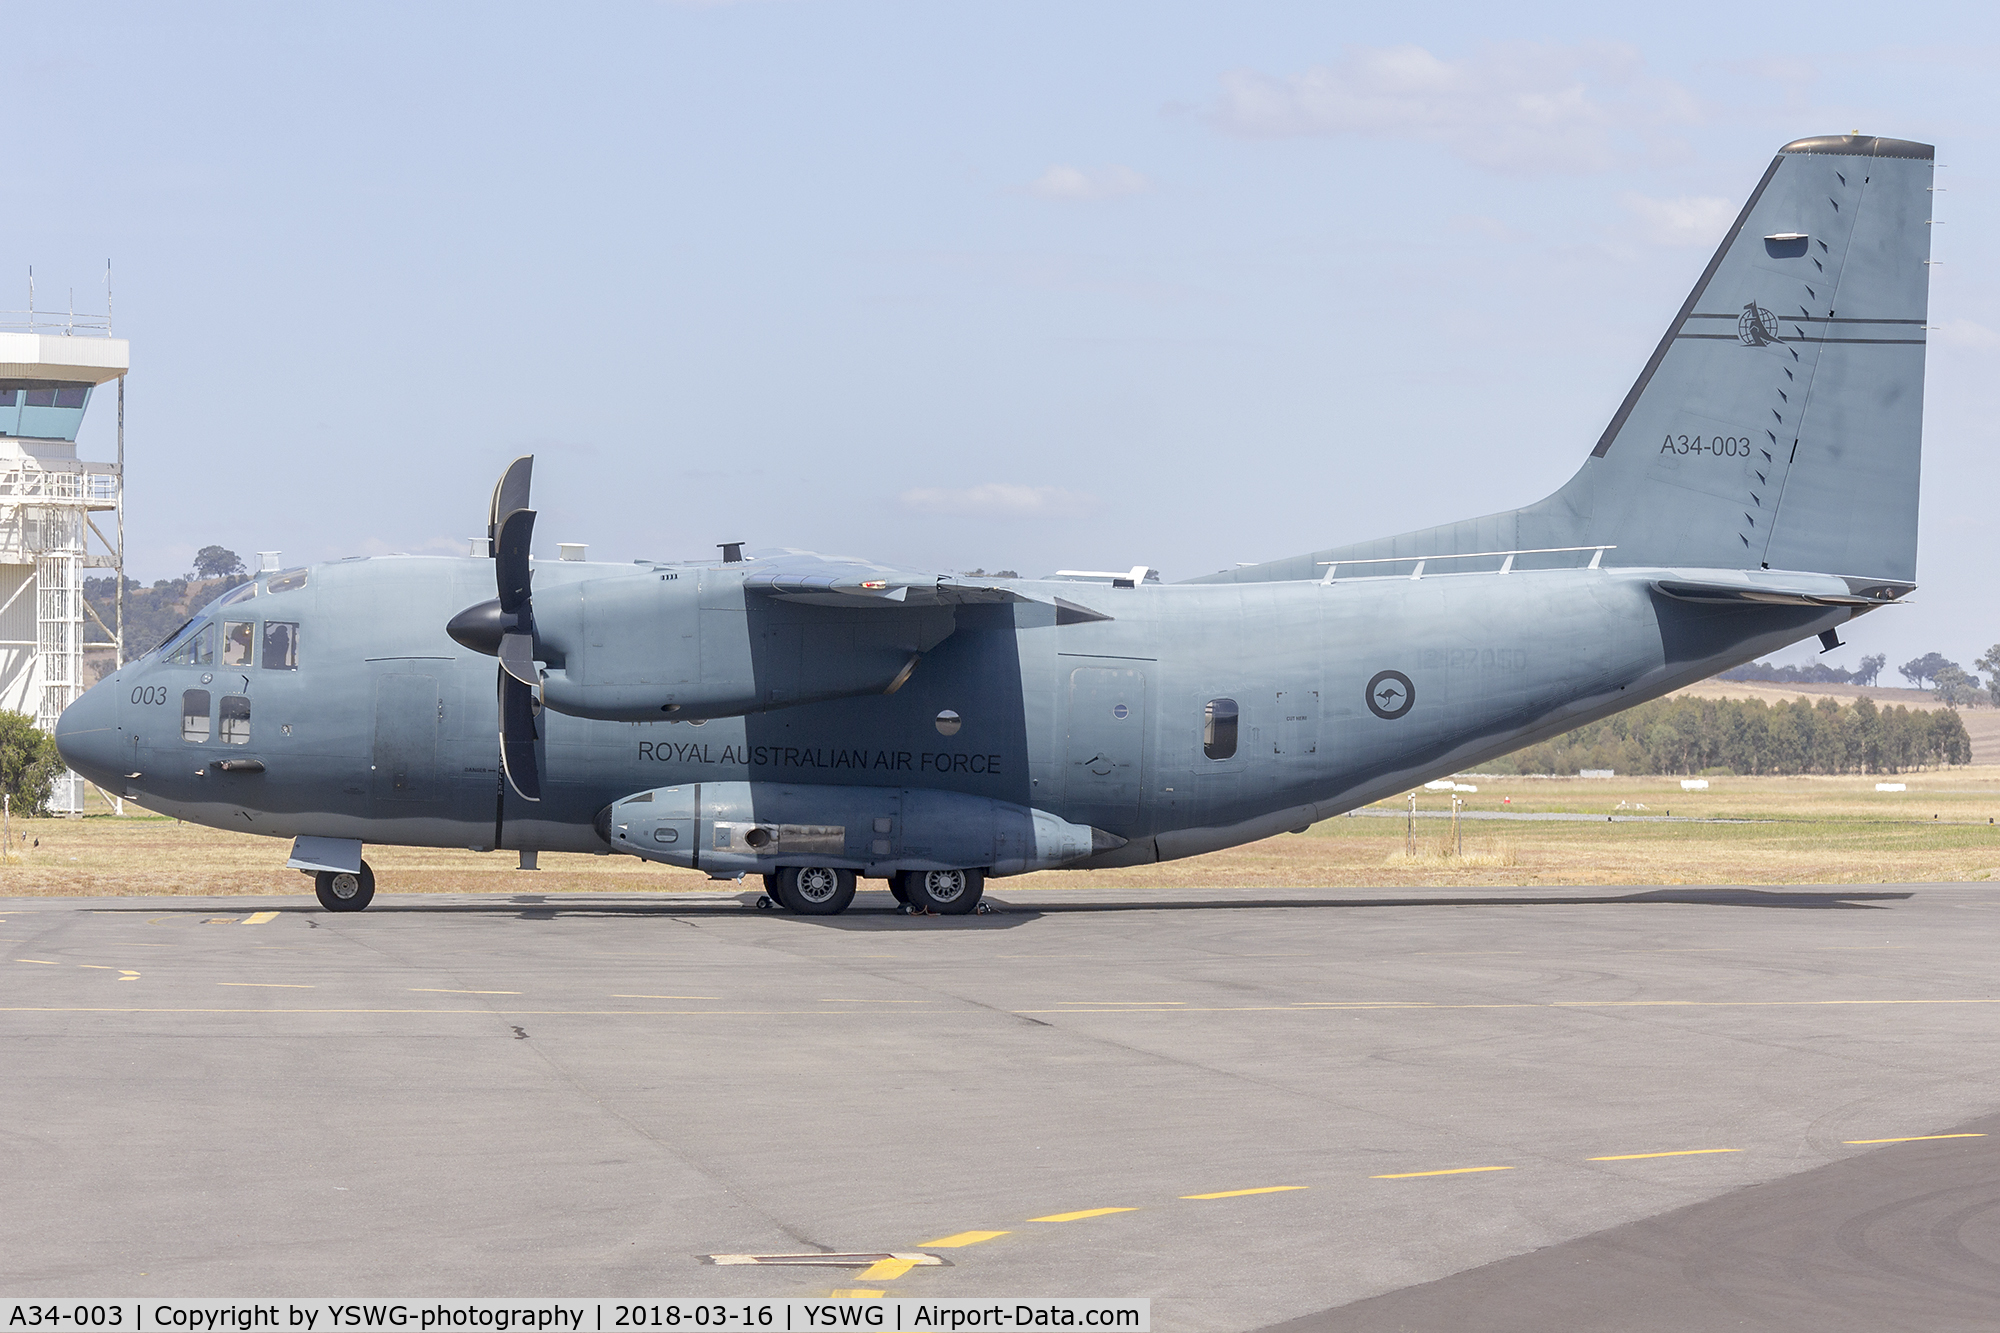 A34-003, 2015 Alenia C-27J Spartan C/N 4182/AUS03, Royal Australian Air Force (A34-003) Alenia C-27J Spartan at Wagga Wagga Airport